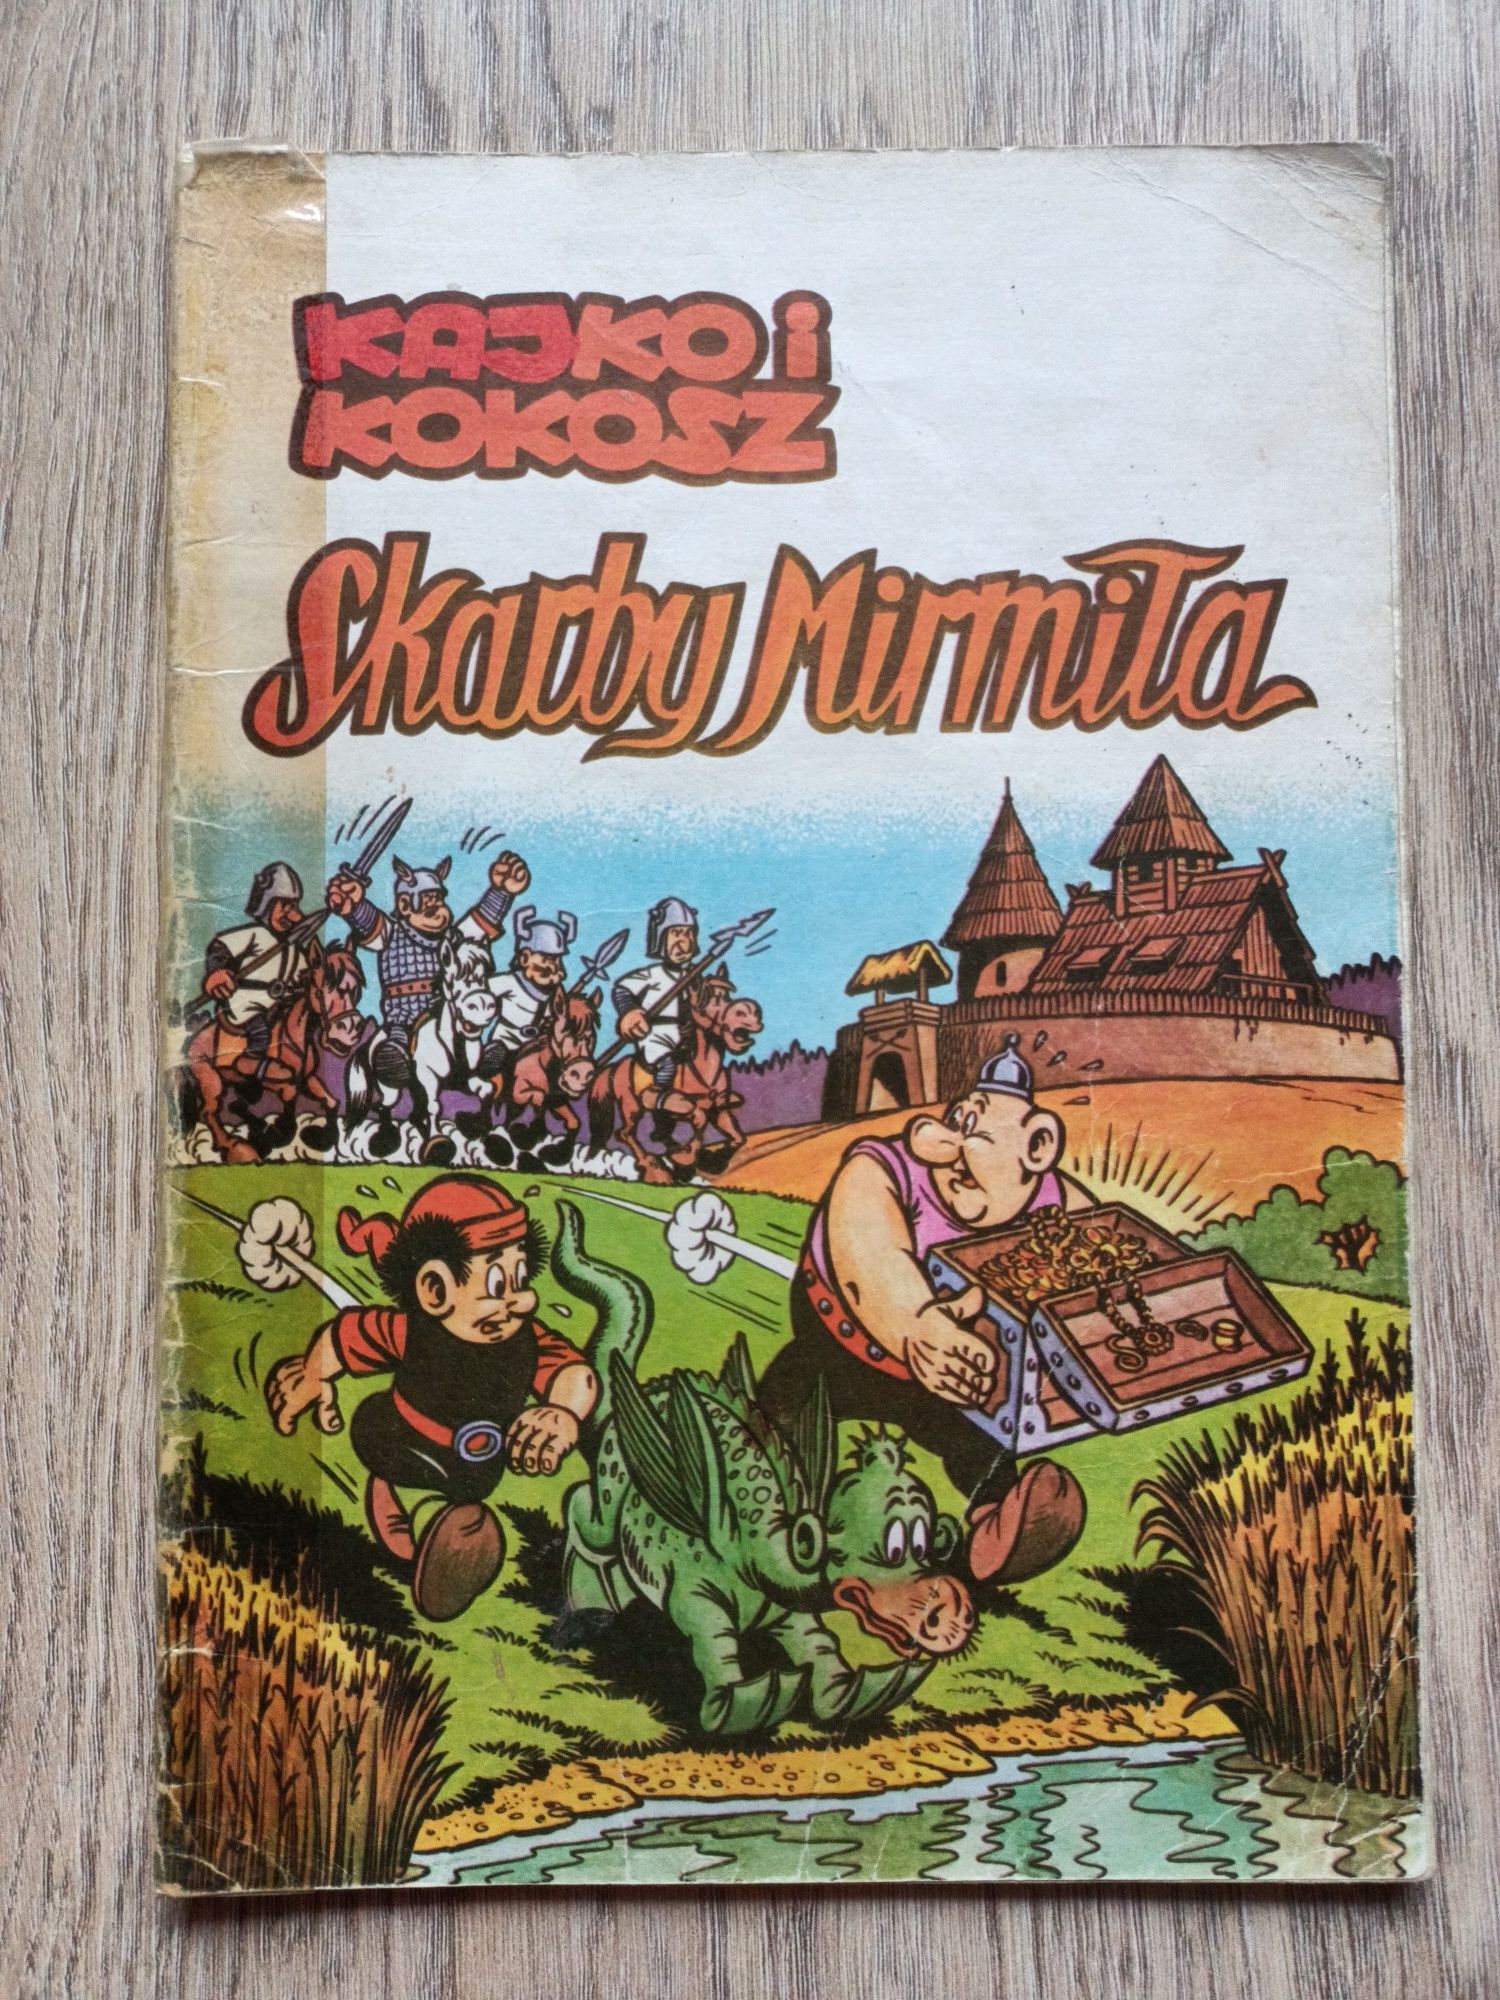 Komiks Kajko i Kokosz "Skarby Mirmiła"